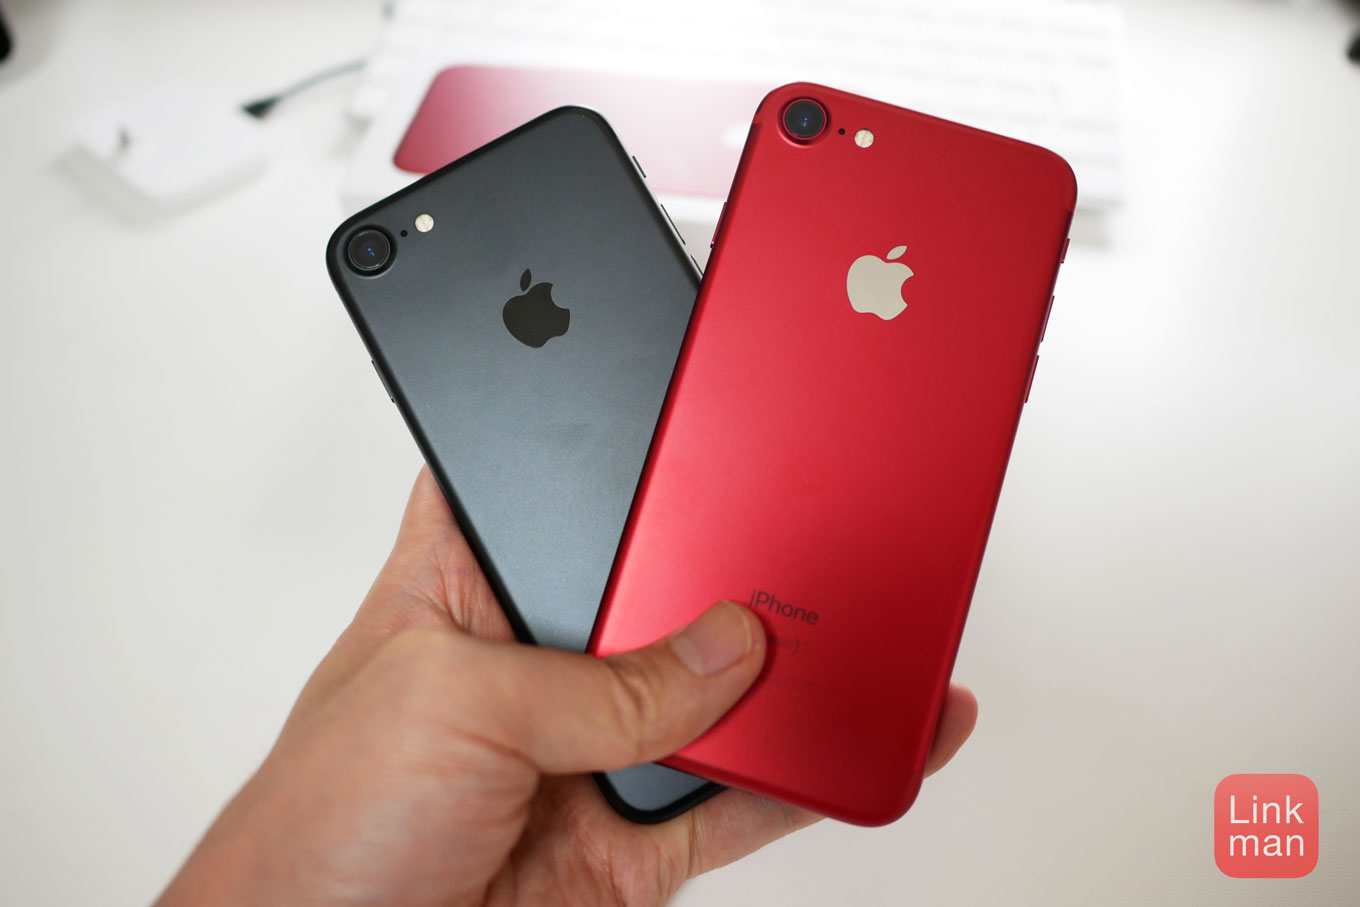 9月に発表される次期「iPhone」は「iPhone 7s」「iPhone 7s Plus」のみになる!?